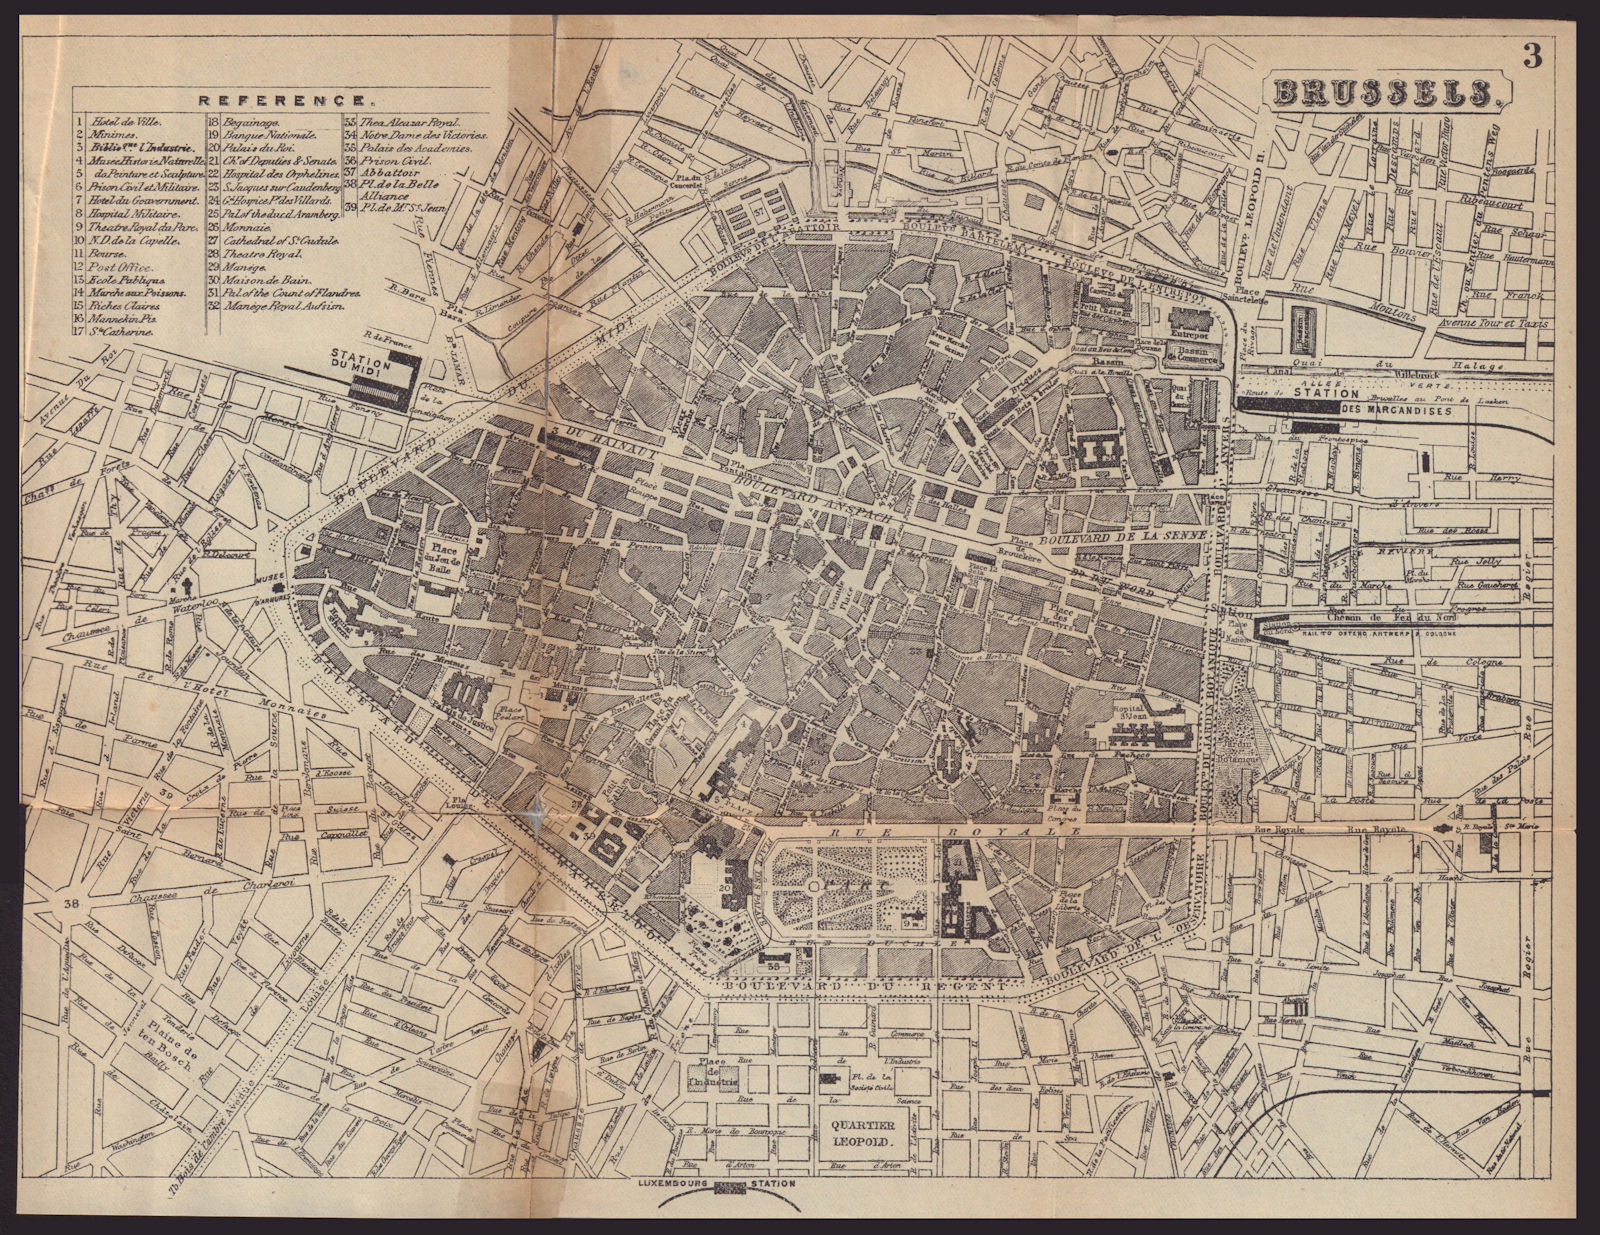 BRUSSELS BRUSSEL BRUXELLES antique town plan city map. Belgium. BRADSHAW c1898